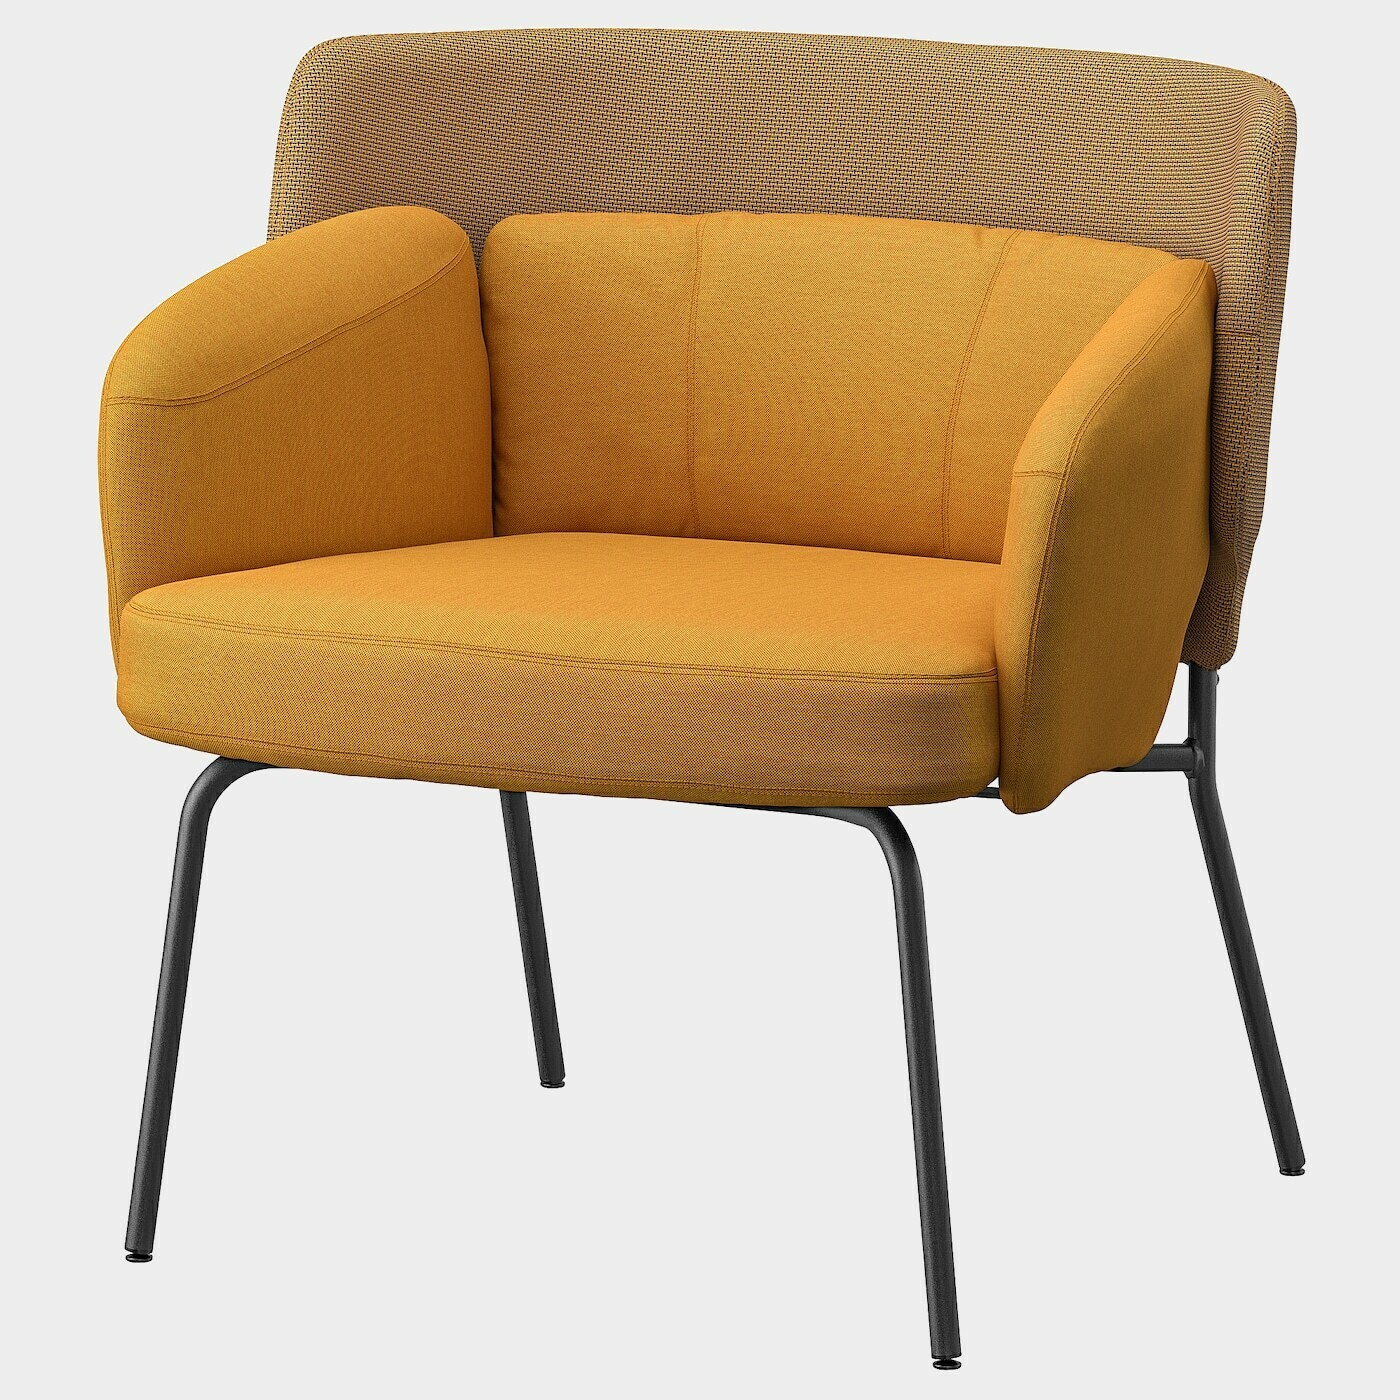 BINGSTA Sessel  - Sessel & Récamieren - Möbel Ideen für dein Zuhause von Home Trends. Möbel Trends von Social Media Influencer für dein Skandi Zuhause.